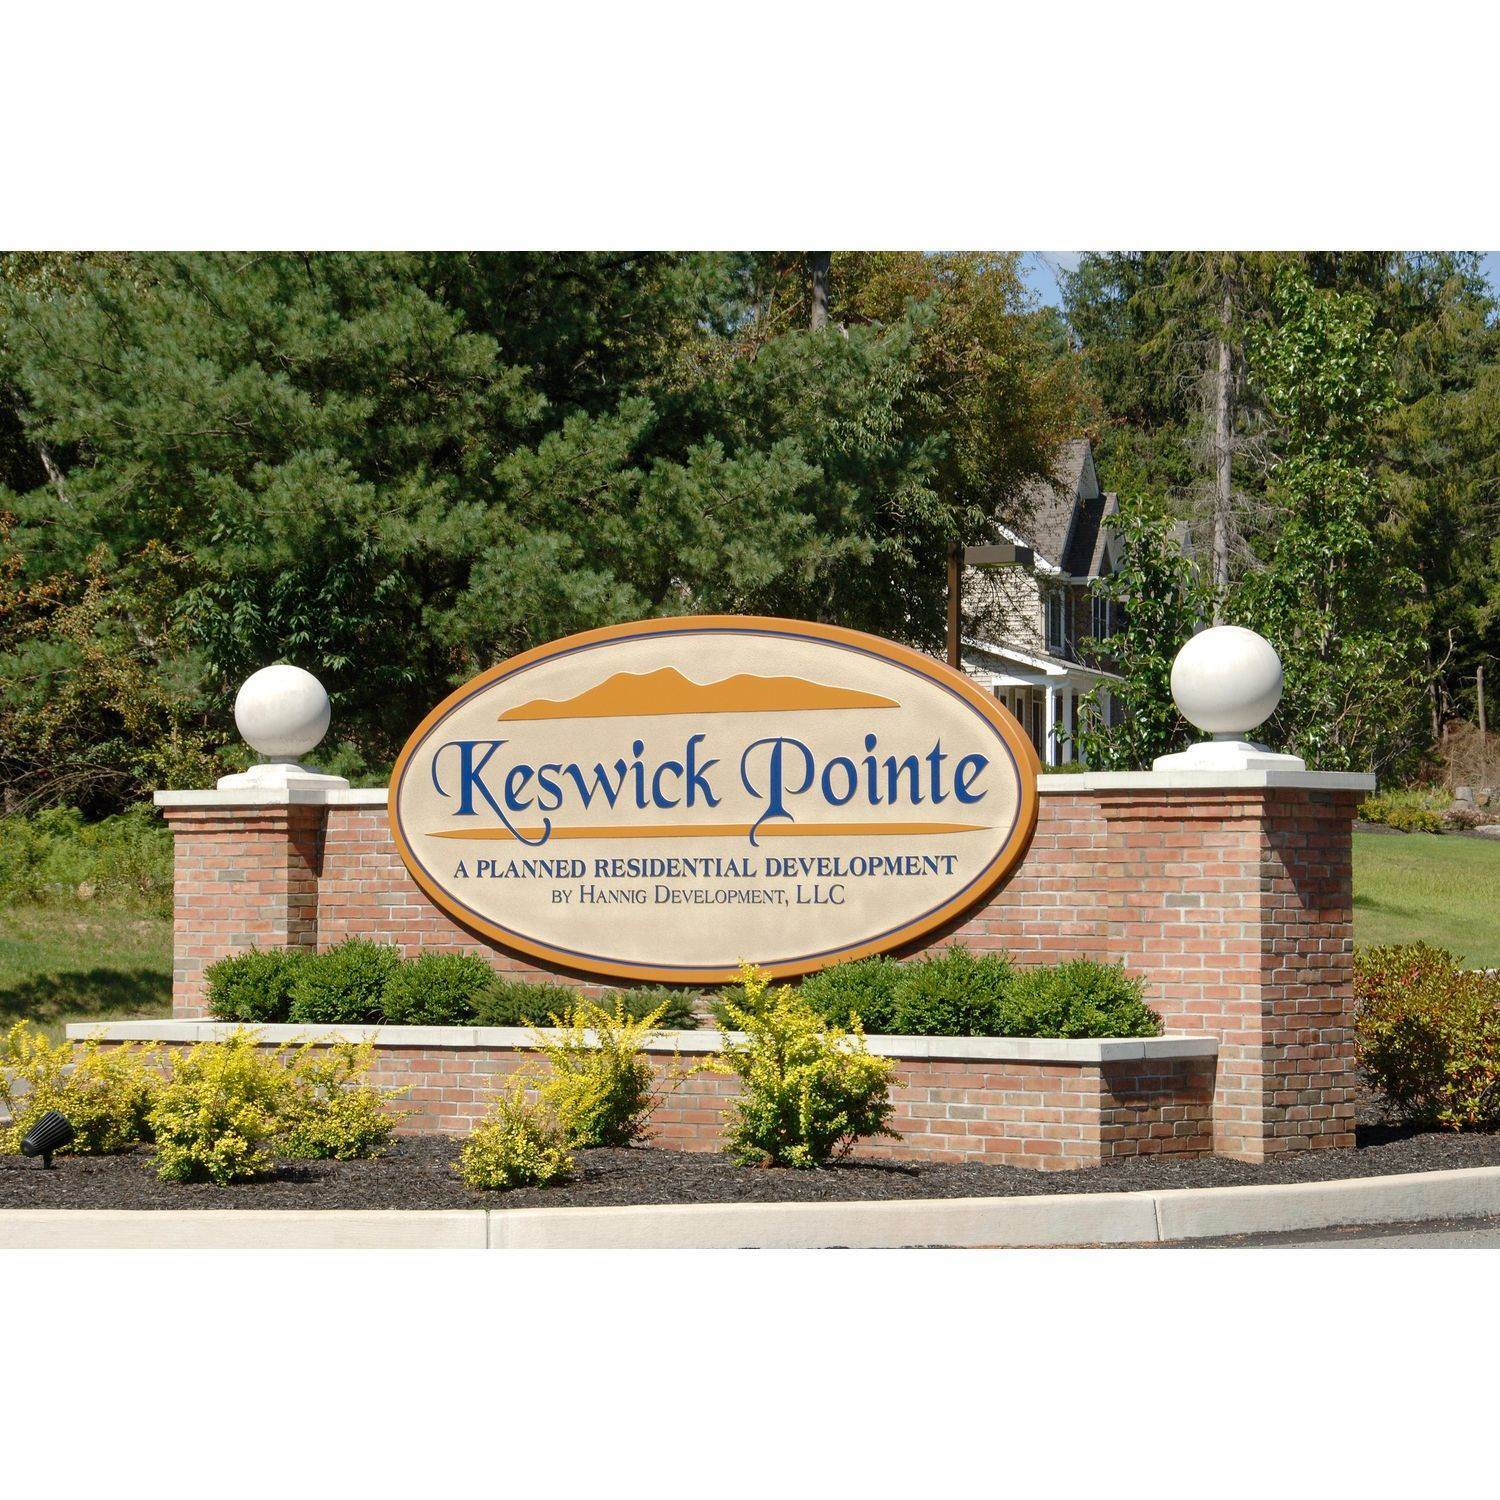 Keswick Pointe building at 135 Keswick Drive, Blakeslee, PA 18610